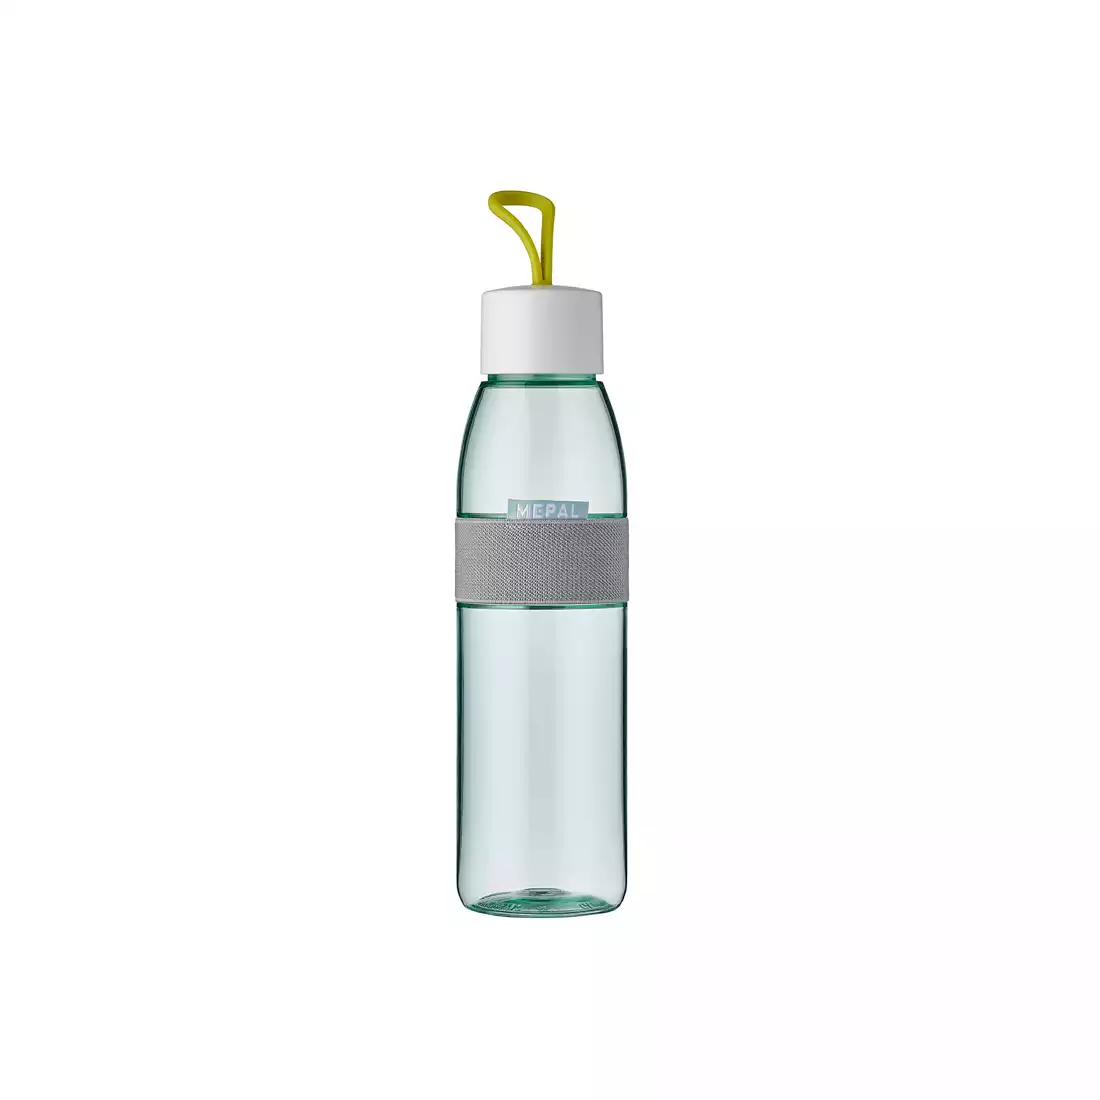 MEPAL WATER ELLIPSE butelka na wodę 500ml, lemon vibe